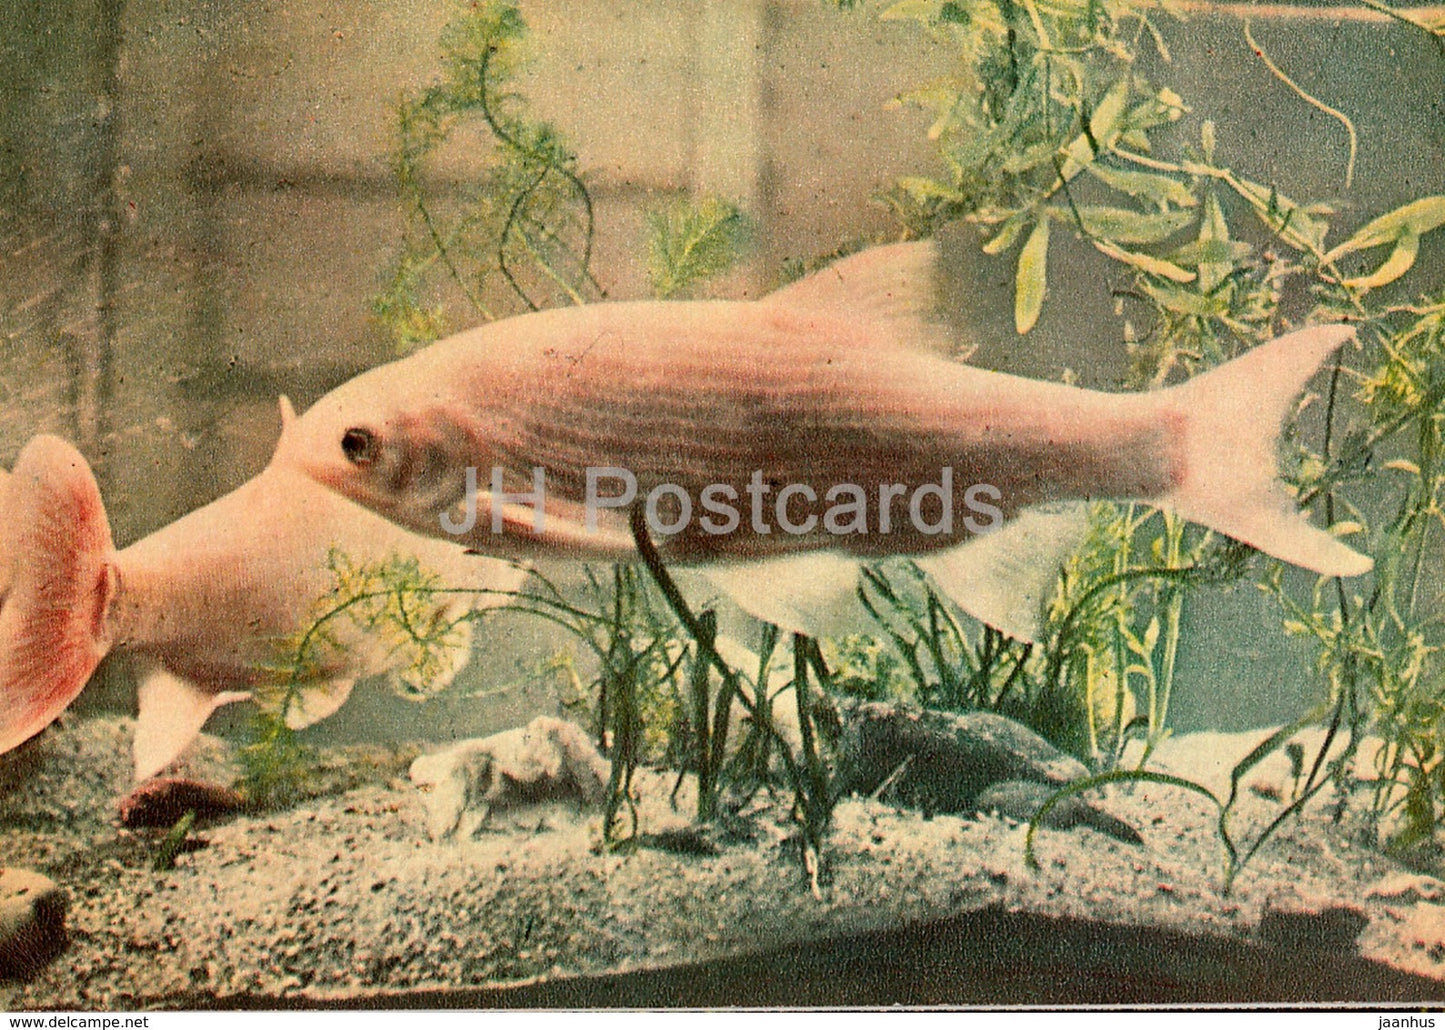 Ide - Leuciscus idus - fish - Riga Zoo - old postcard - Latvia USSR - unused - JH Postcards